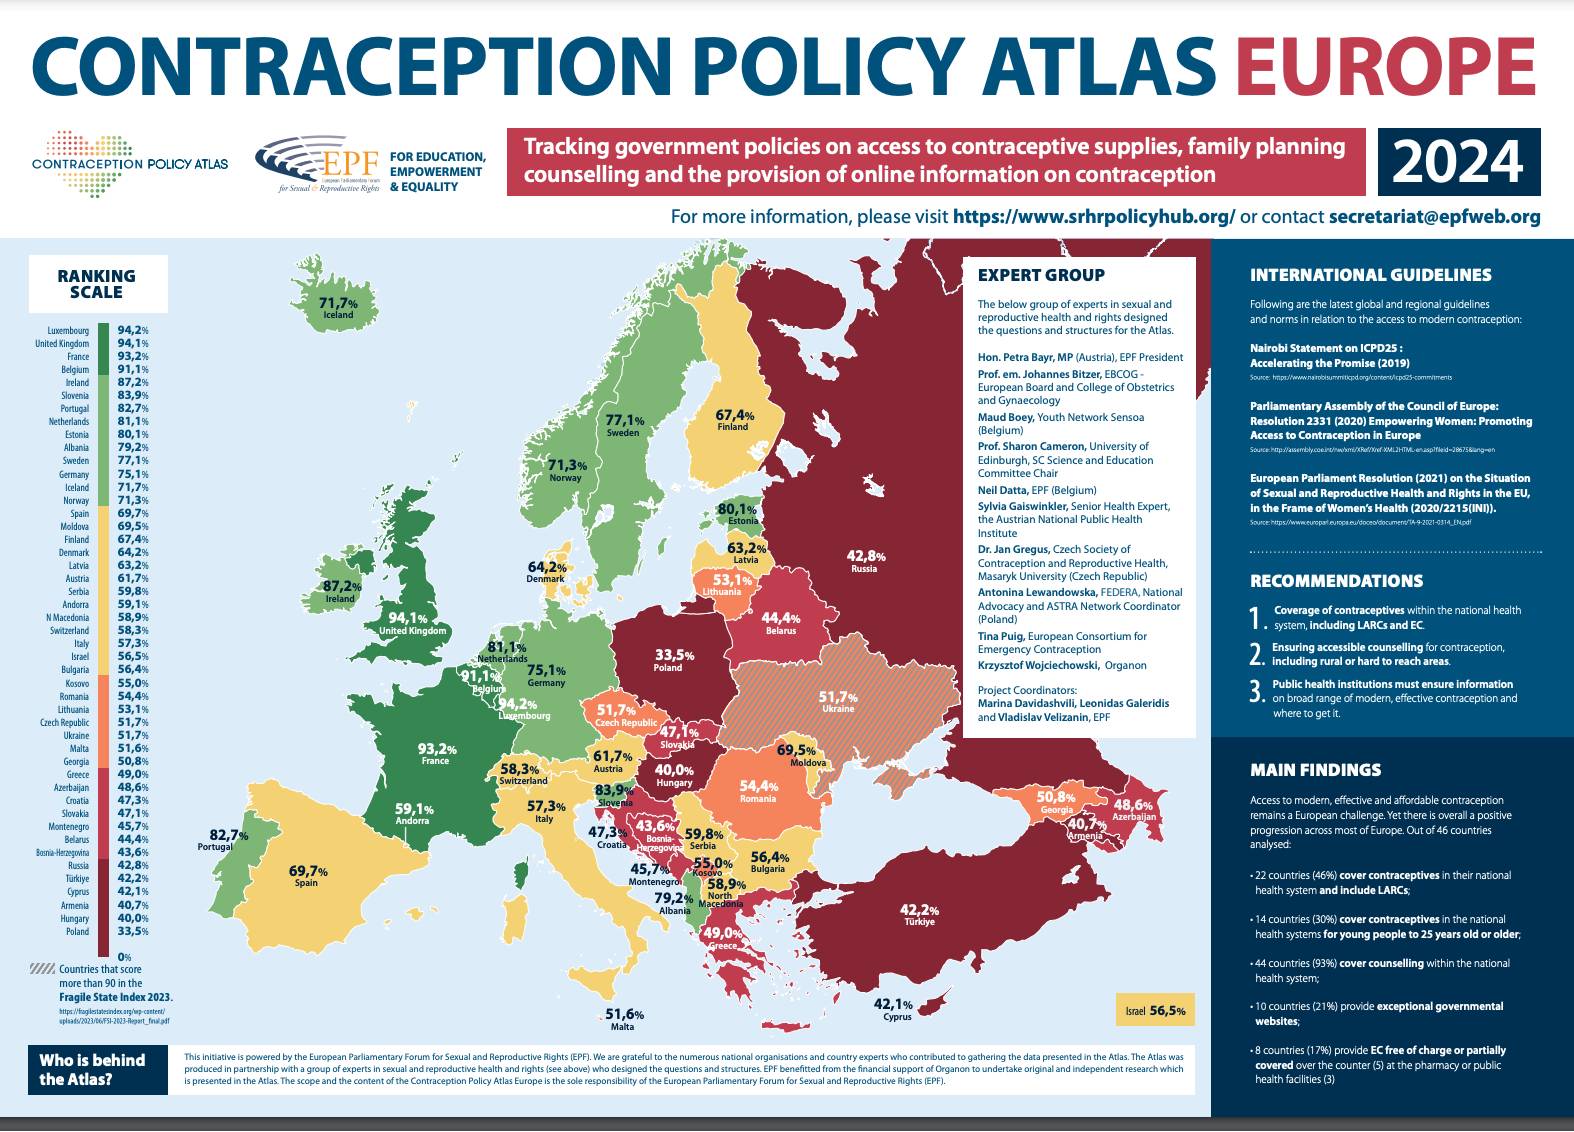 Mapa europy z zaznaczoną kolorem dostępnością antykoncepcji